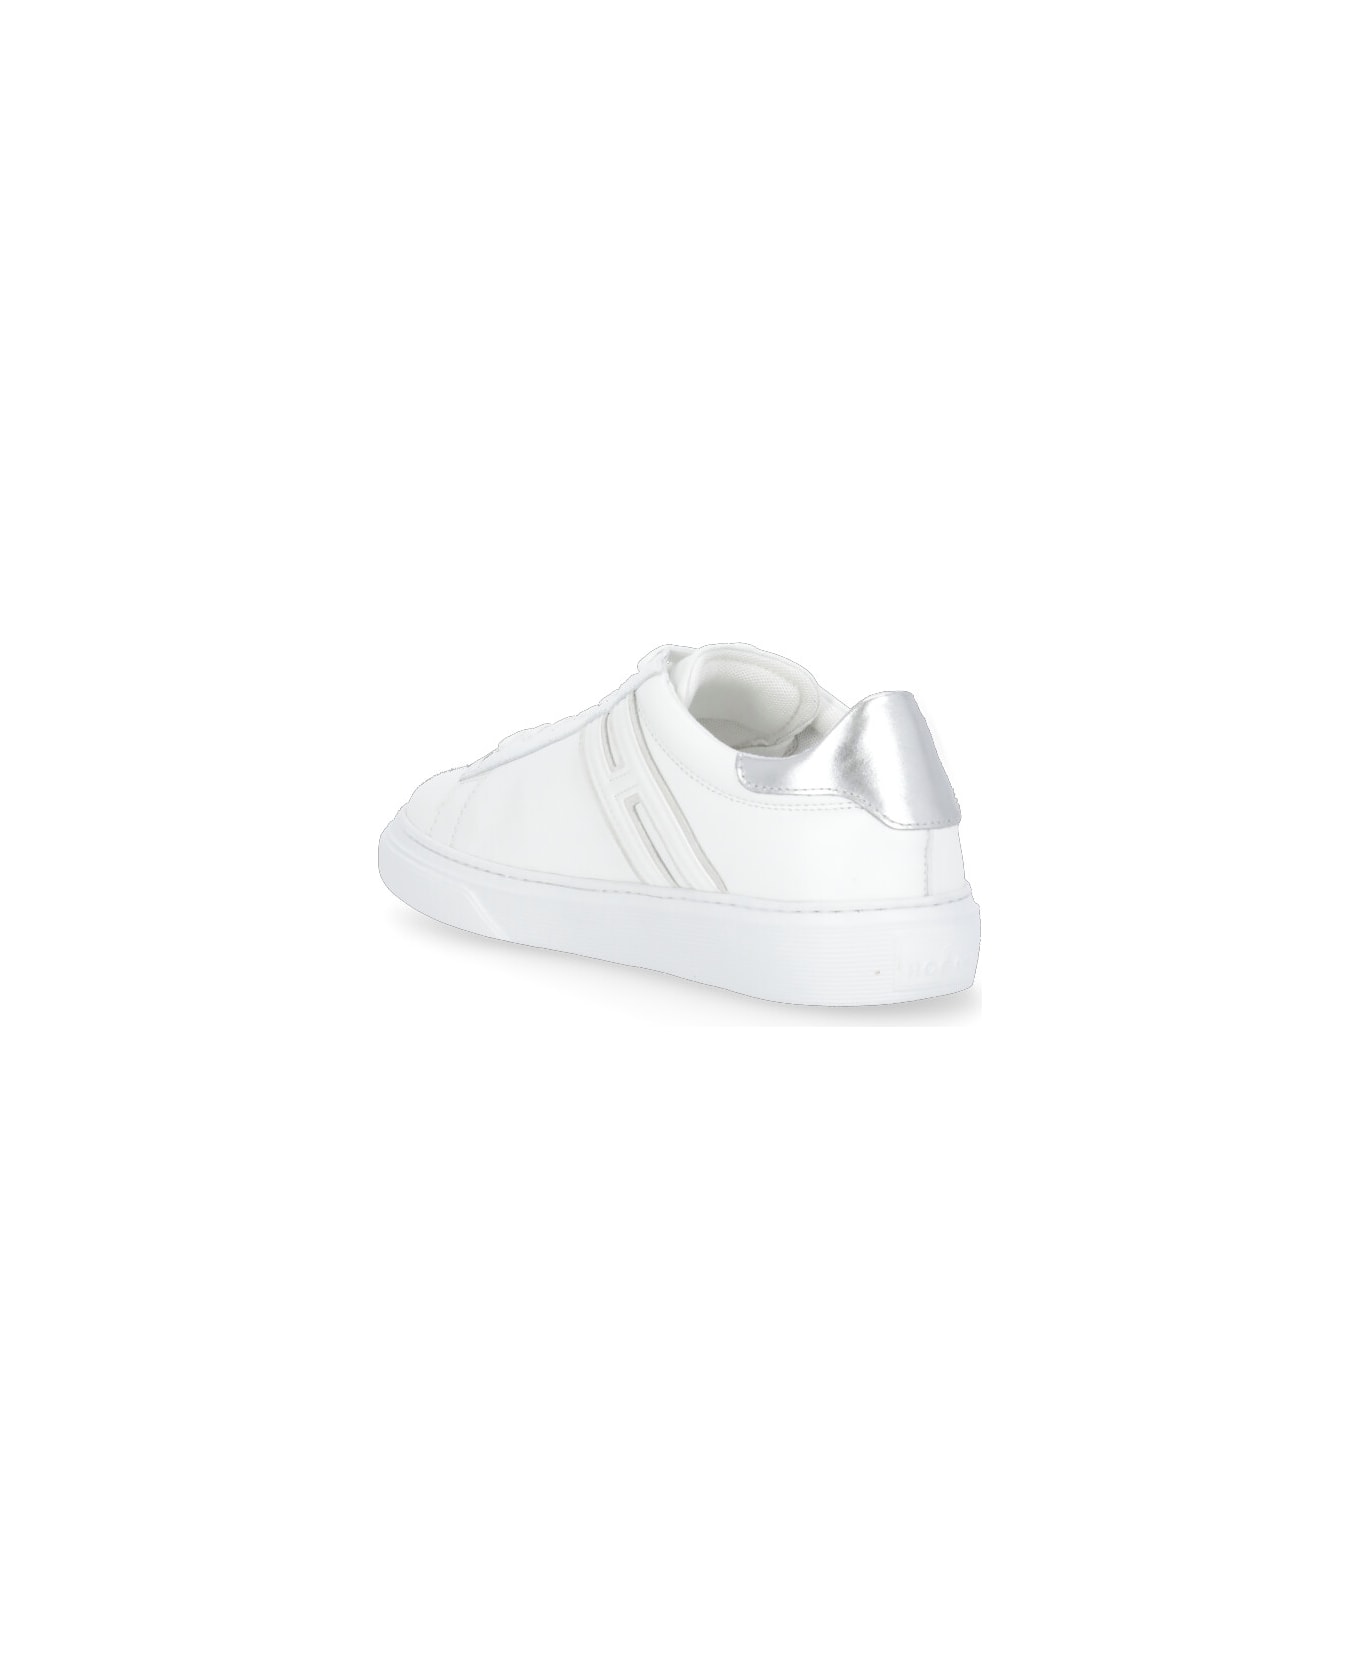 Hogan Sneakers H365 - White スニーカー